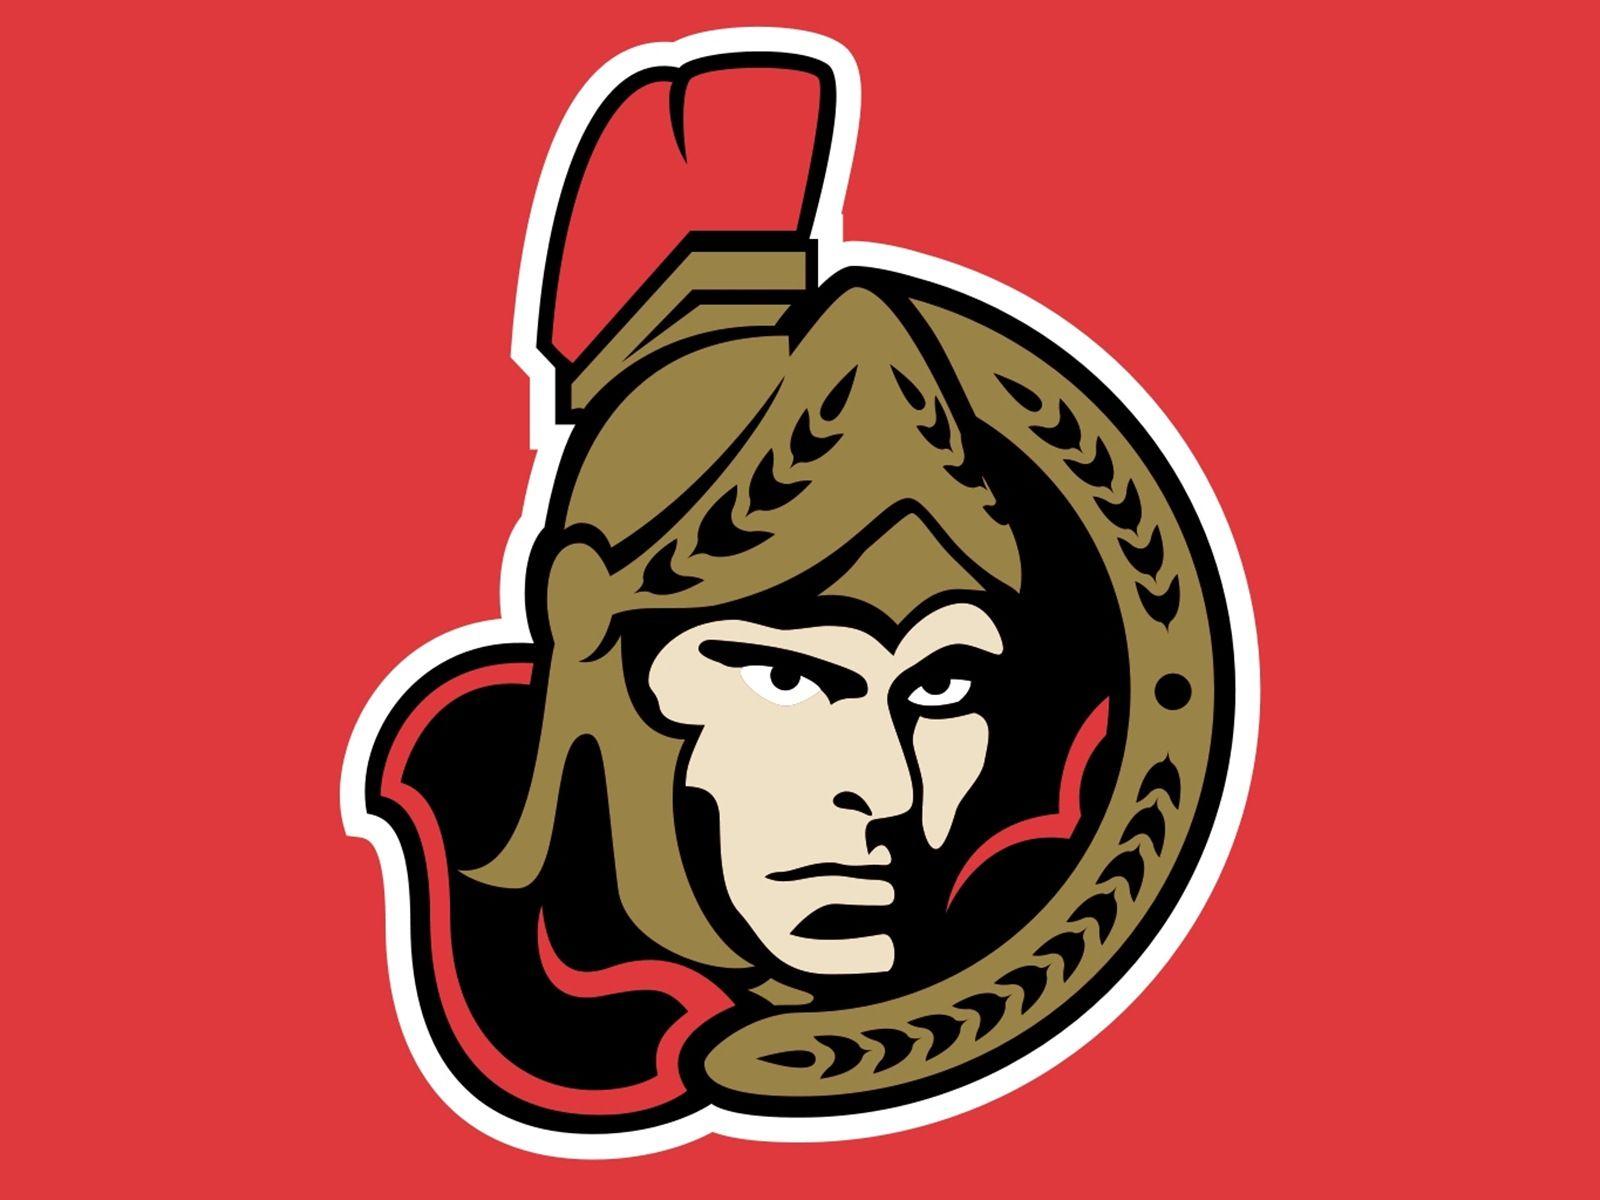 Ottawa Senators Logo - Upcoming Events – Ottawa vs. Canucks: Tues, Oct 10 @ 7pm ...